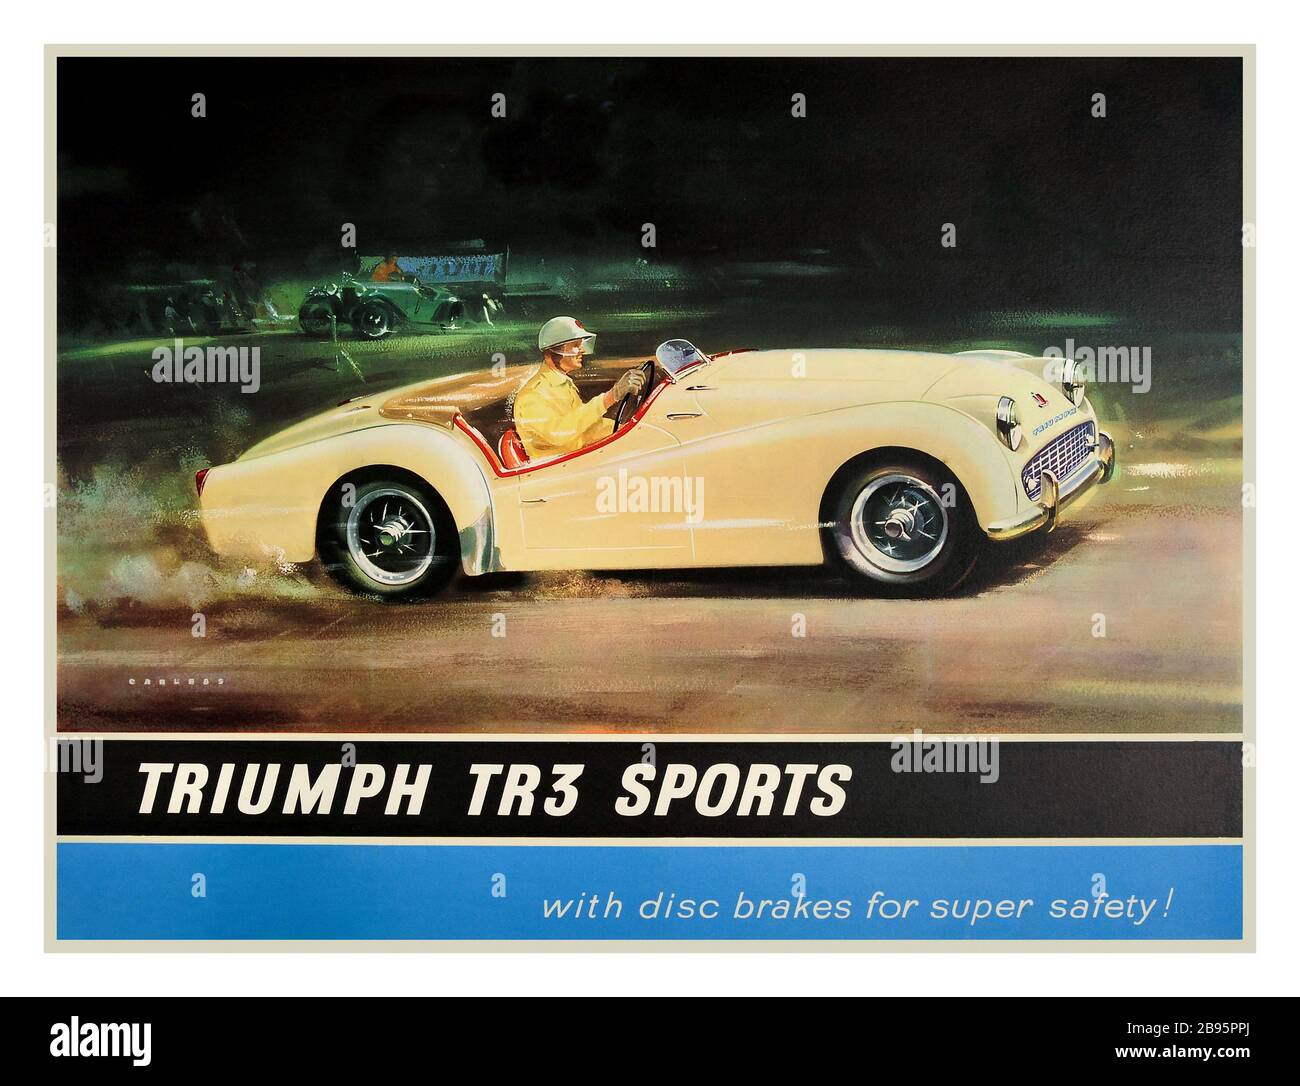 TRIUMPH TR3 Vintage 1950er-Werbeplakat British UK Sportwagen Poster - Triumph TR3 Sports mit Scheibenbremsen für mehr Sicherheit! - der britische Sportwagen der Standard Triumph Motor Company, TR3, war einer der besten Verkäufer. Plakat des renommierten Auto- und Luftfahrtkünstlers Vic Carless (1928-2011) mit cremefarbenen TR3-Rennen mit der Ziellinie und einem grünen Oldtimer im Hintergrund, Großbritannien, 1950er Jahre, Künstlerdesigner: Vic Carless, Stockfoto